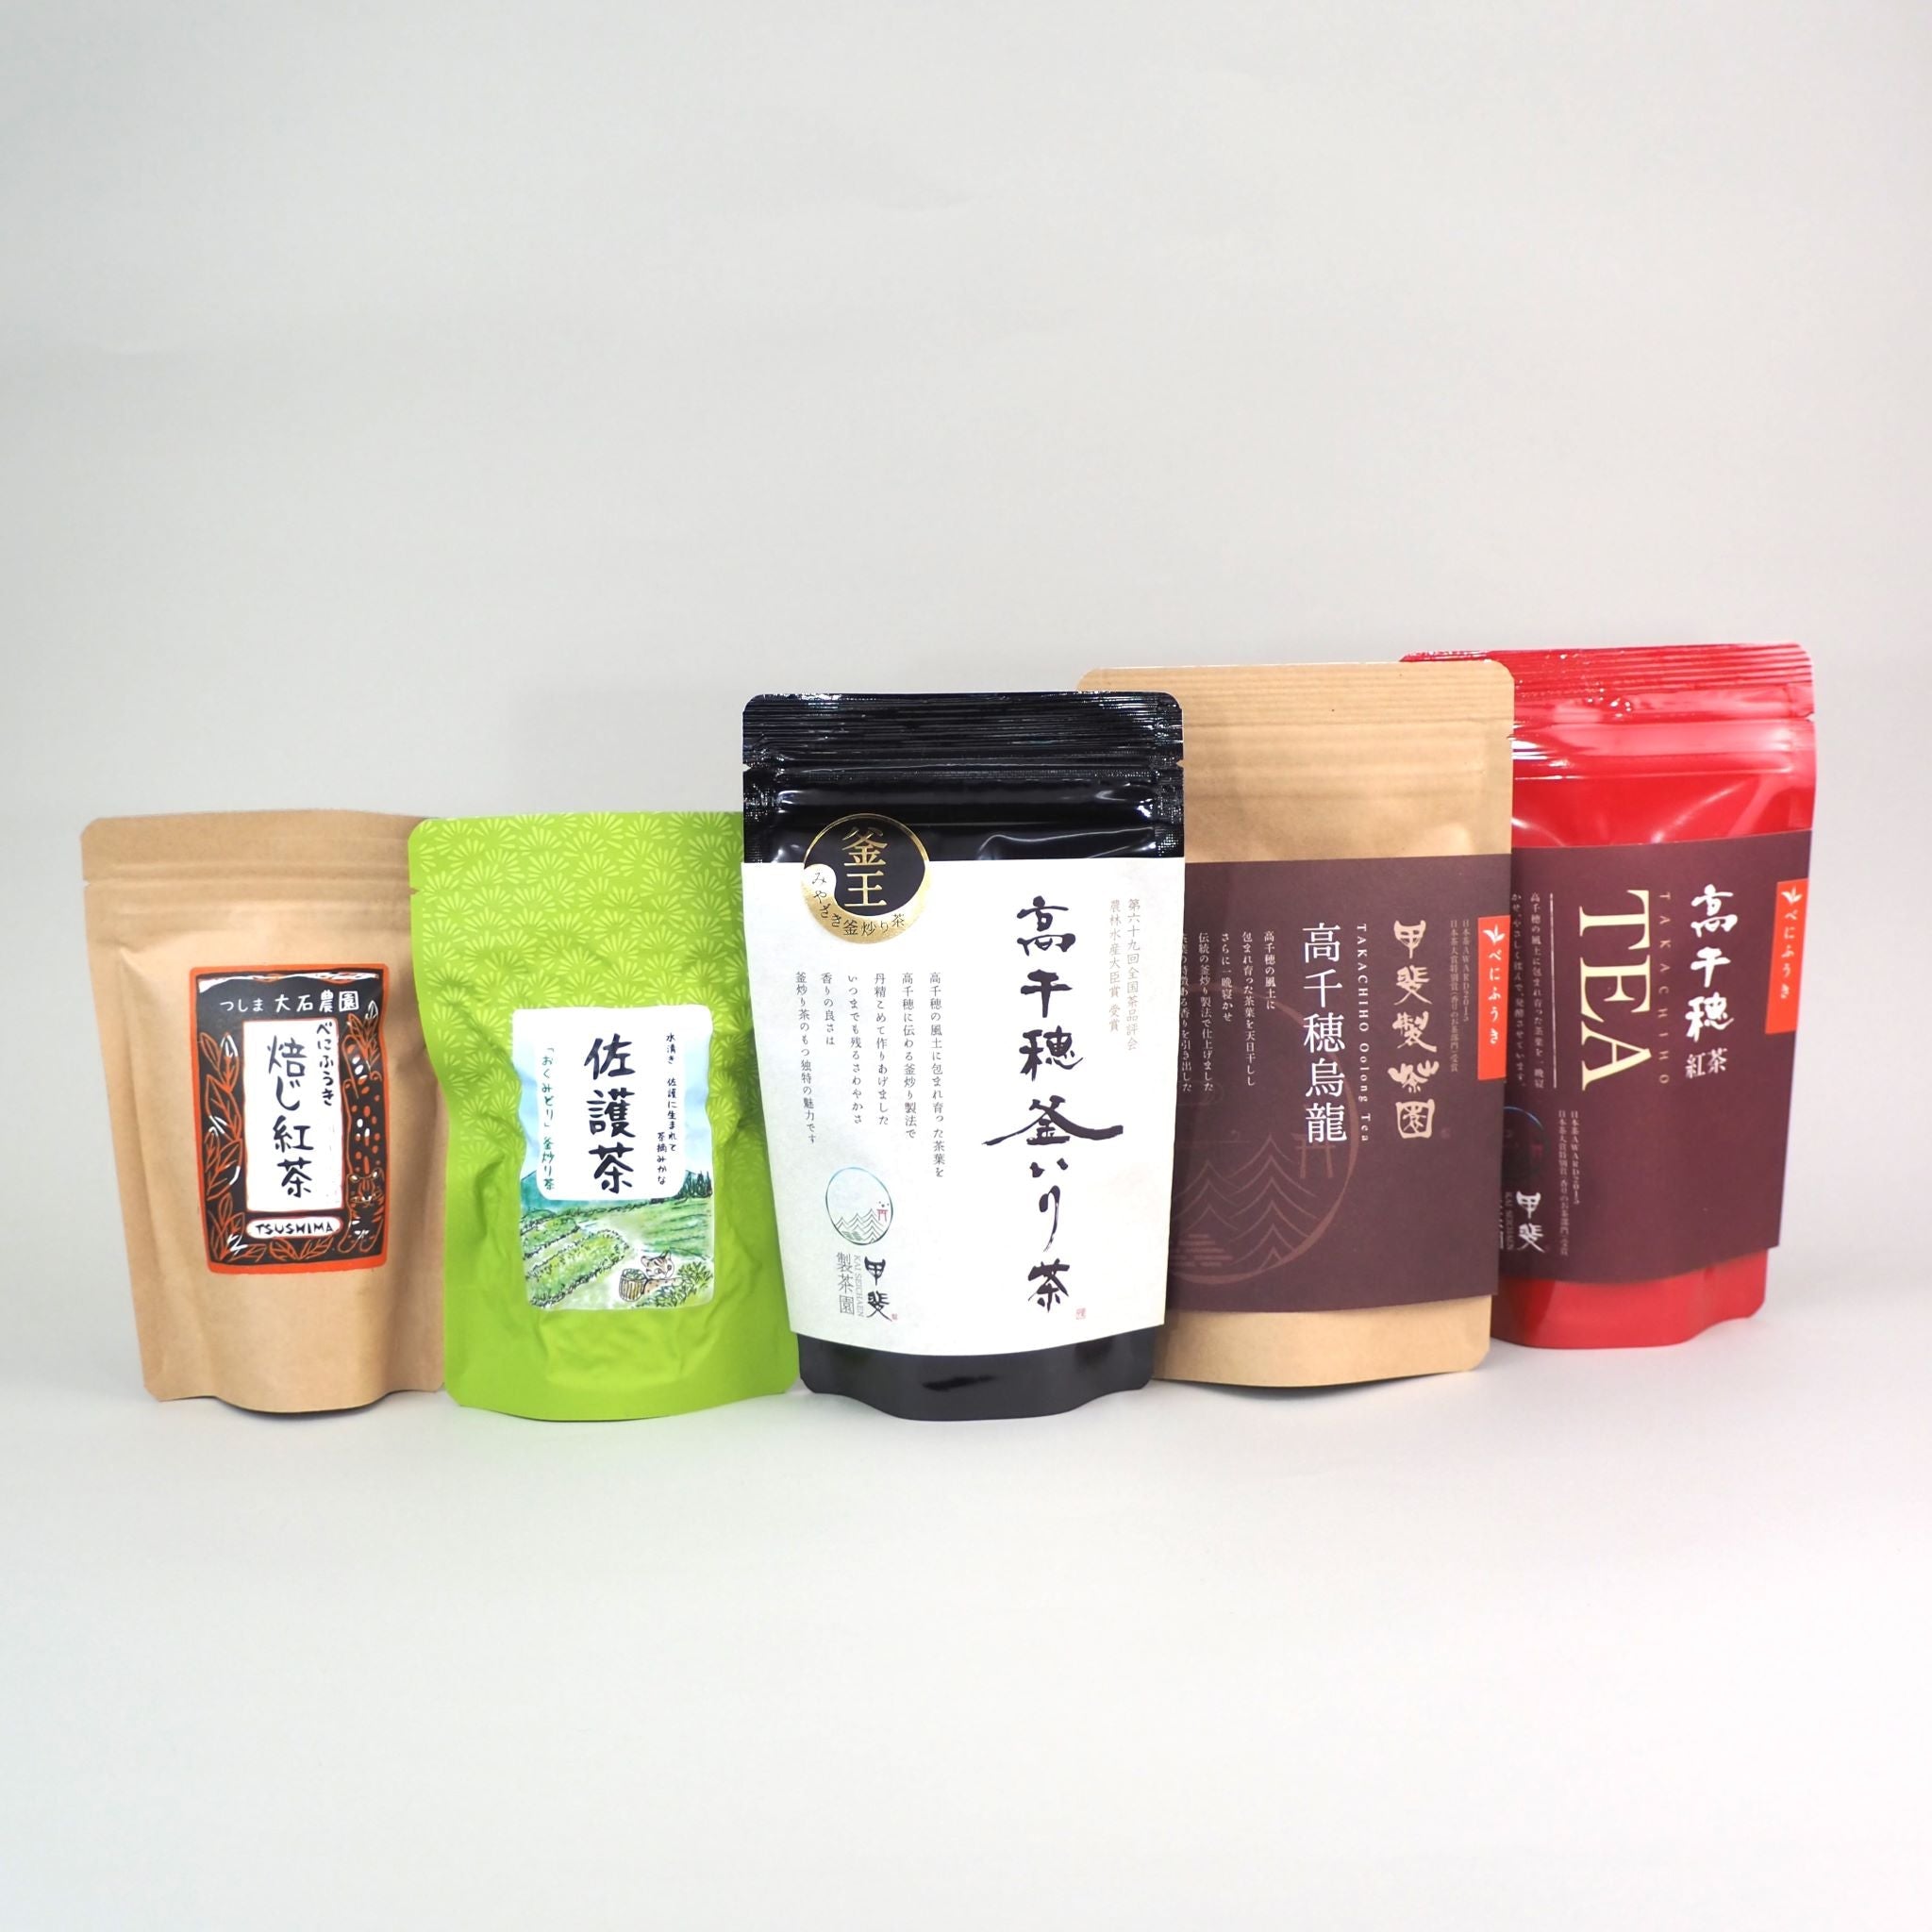 煎茶・中国茶・台湾茶向け急須と国産茶葉の専門店、東山堂です。香りが良く、特徴のある緑茶、和紅茶、烏龍茶を取り揃えています。店舗は大阪のJR茨木駅から徒歩5分にあります。